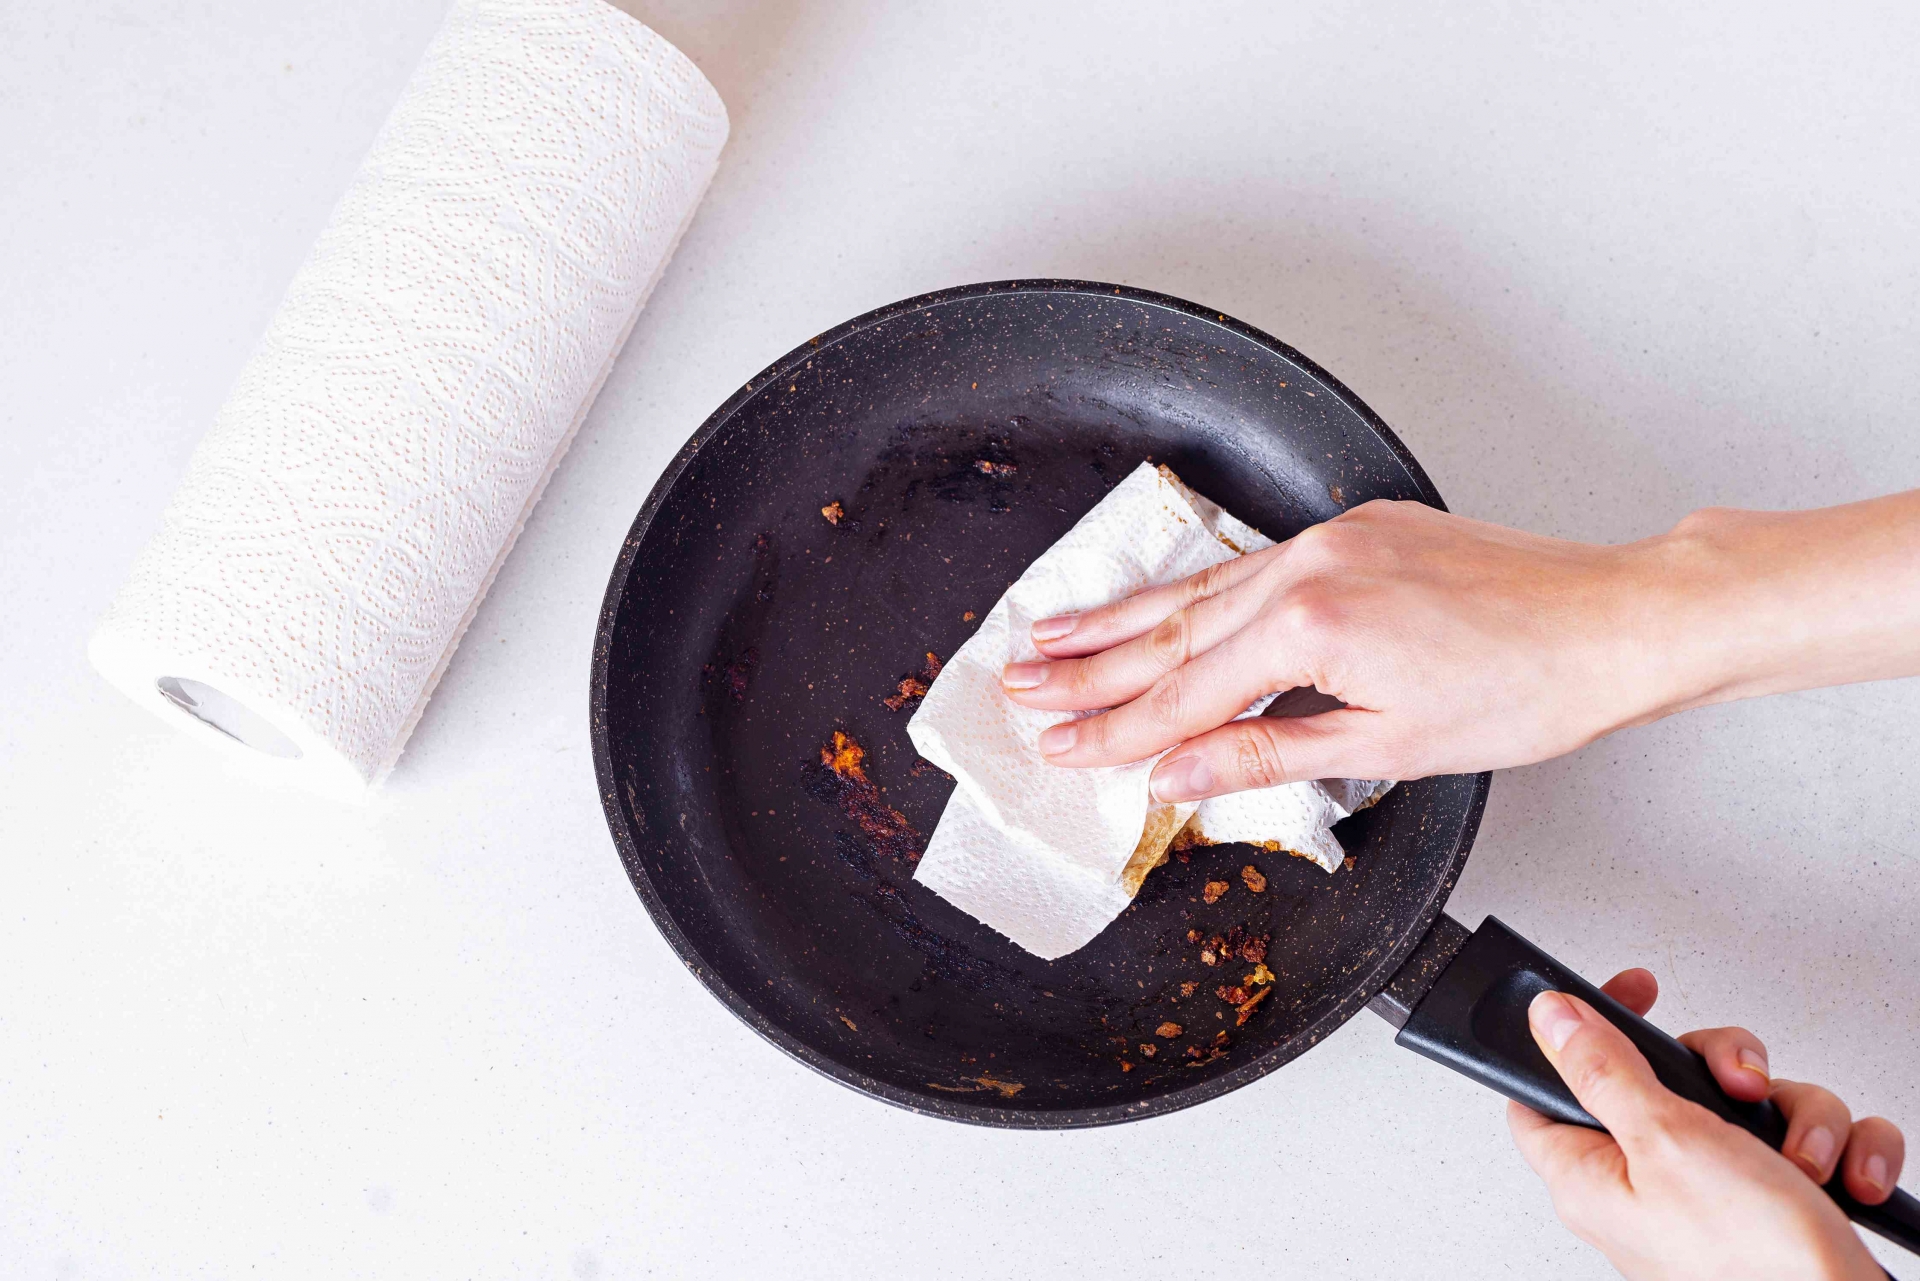 Đổ thức ăn ra ngoài là dùng khăn giấy sạch lau cặn bẩn còn sót lại càng nhiều càng tốt.